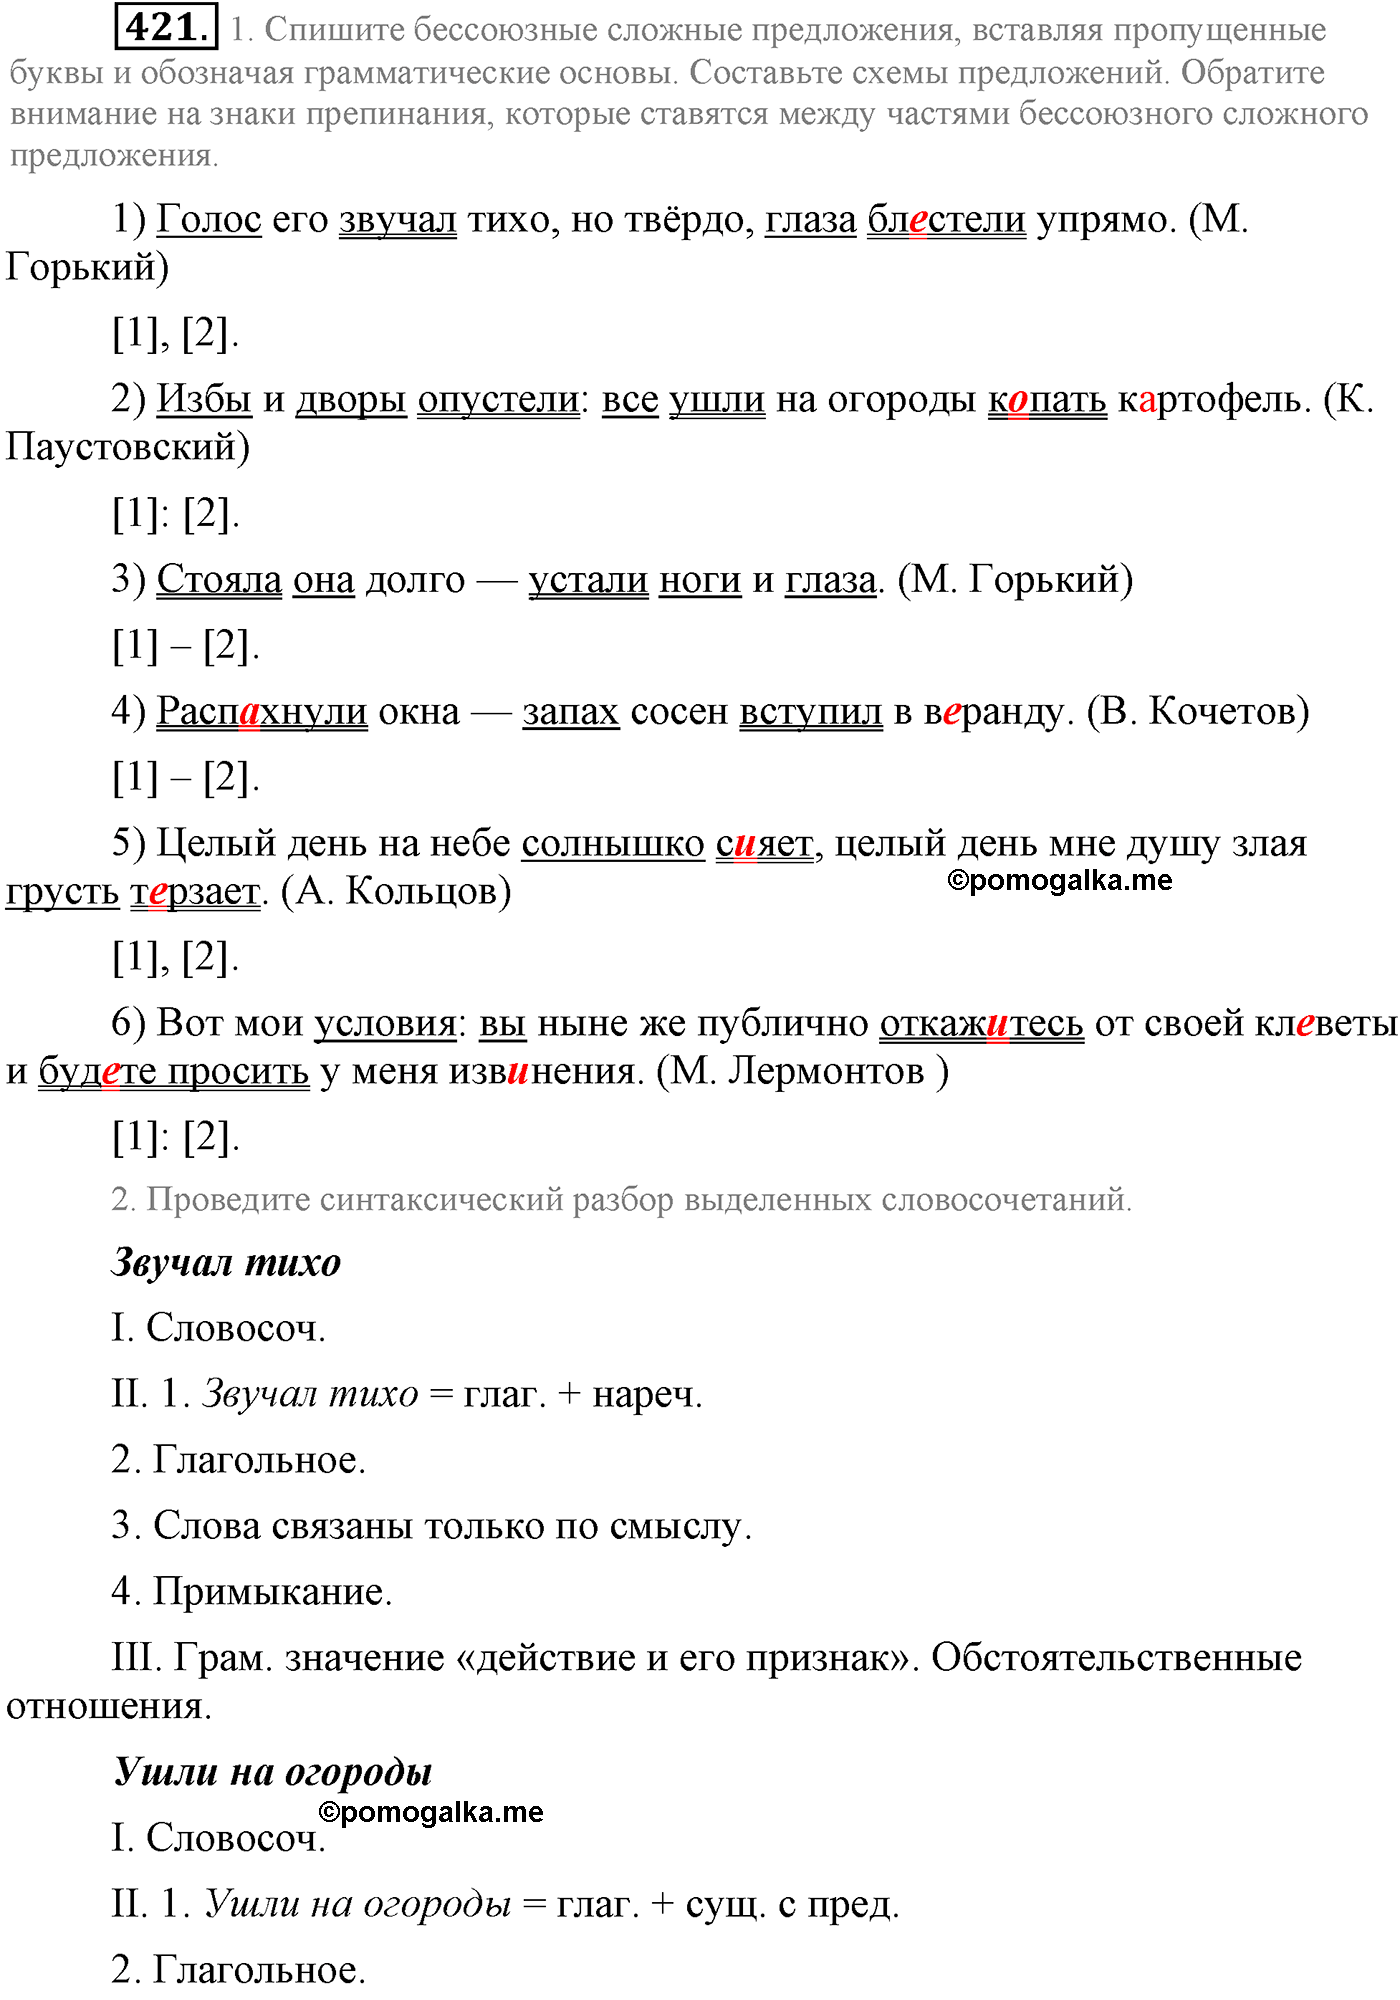 упражнение №421 русский язык 9 класс Львова